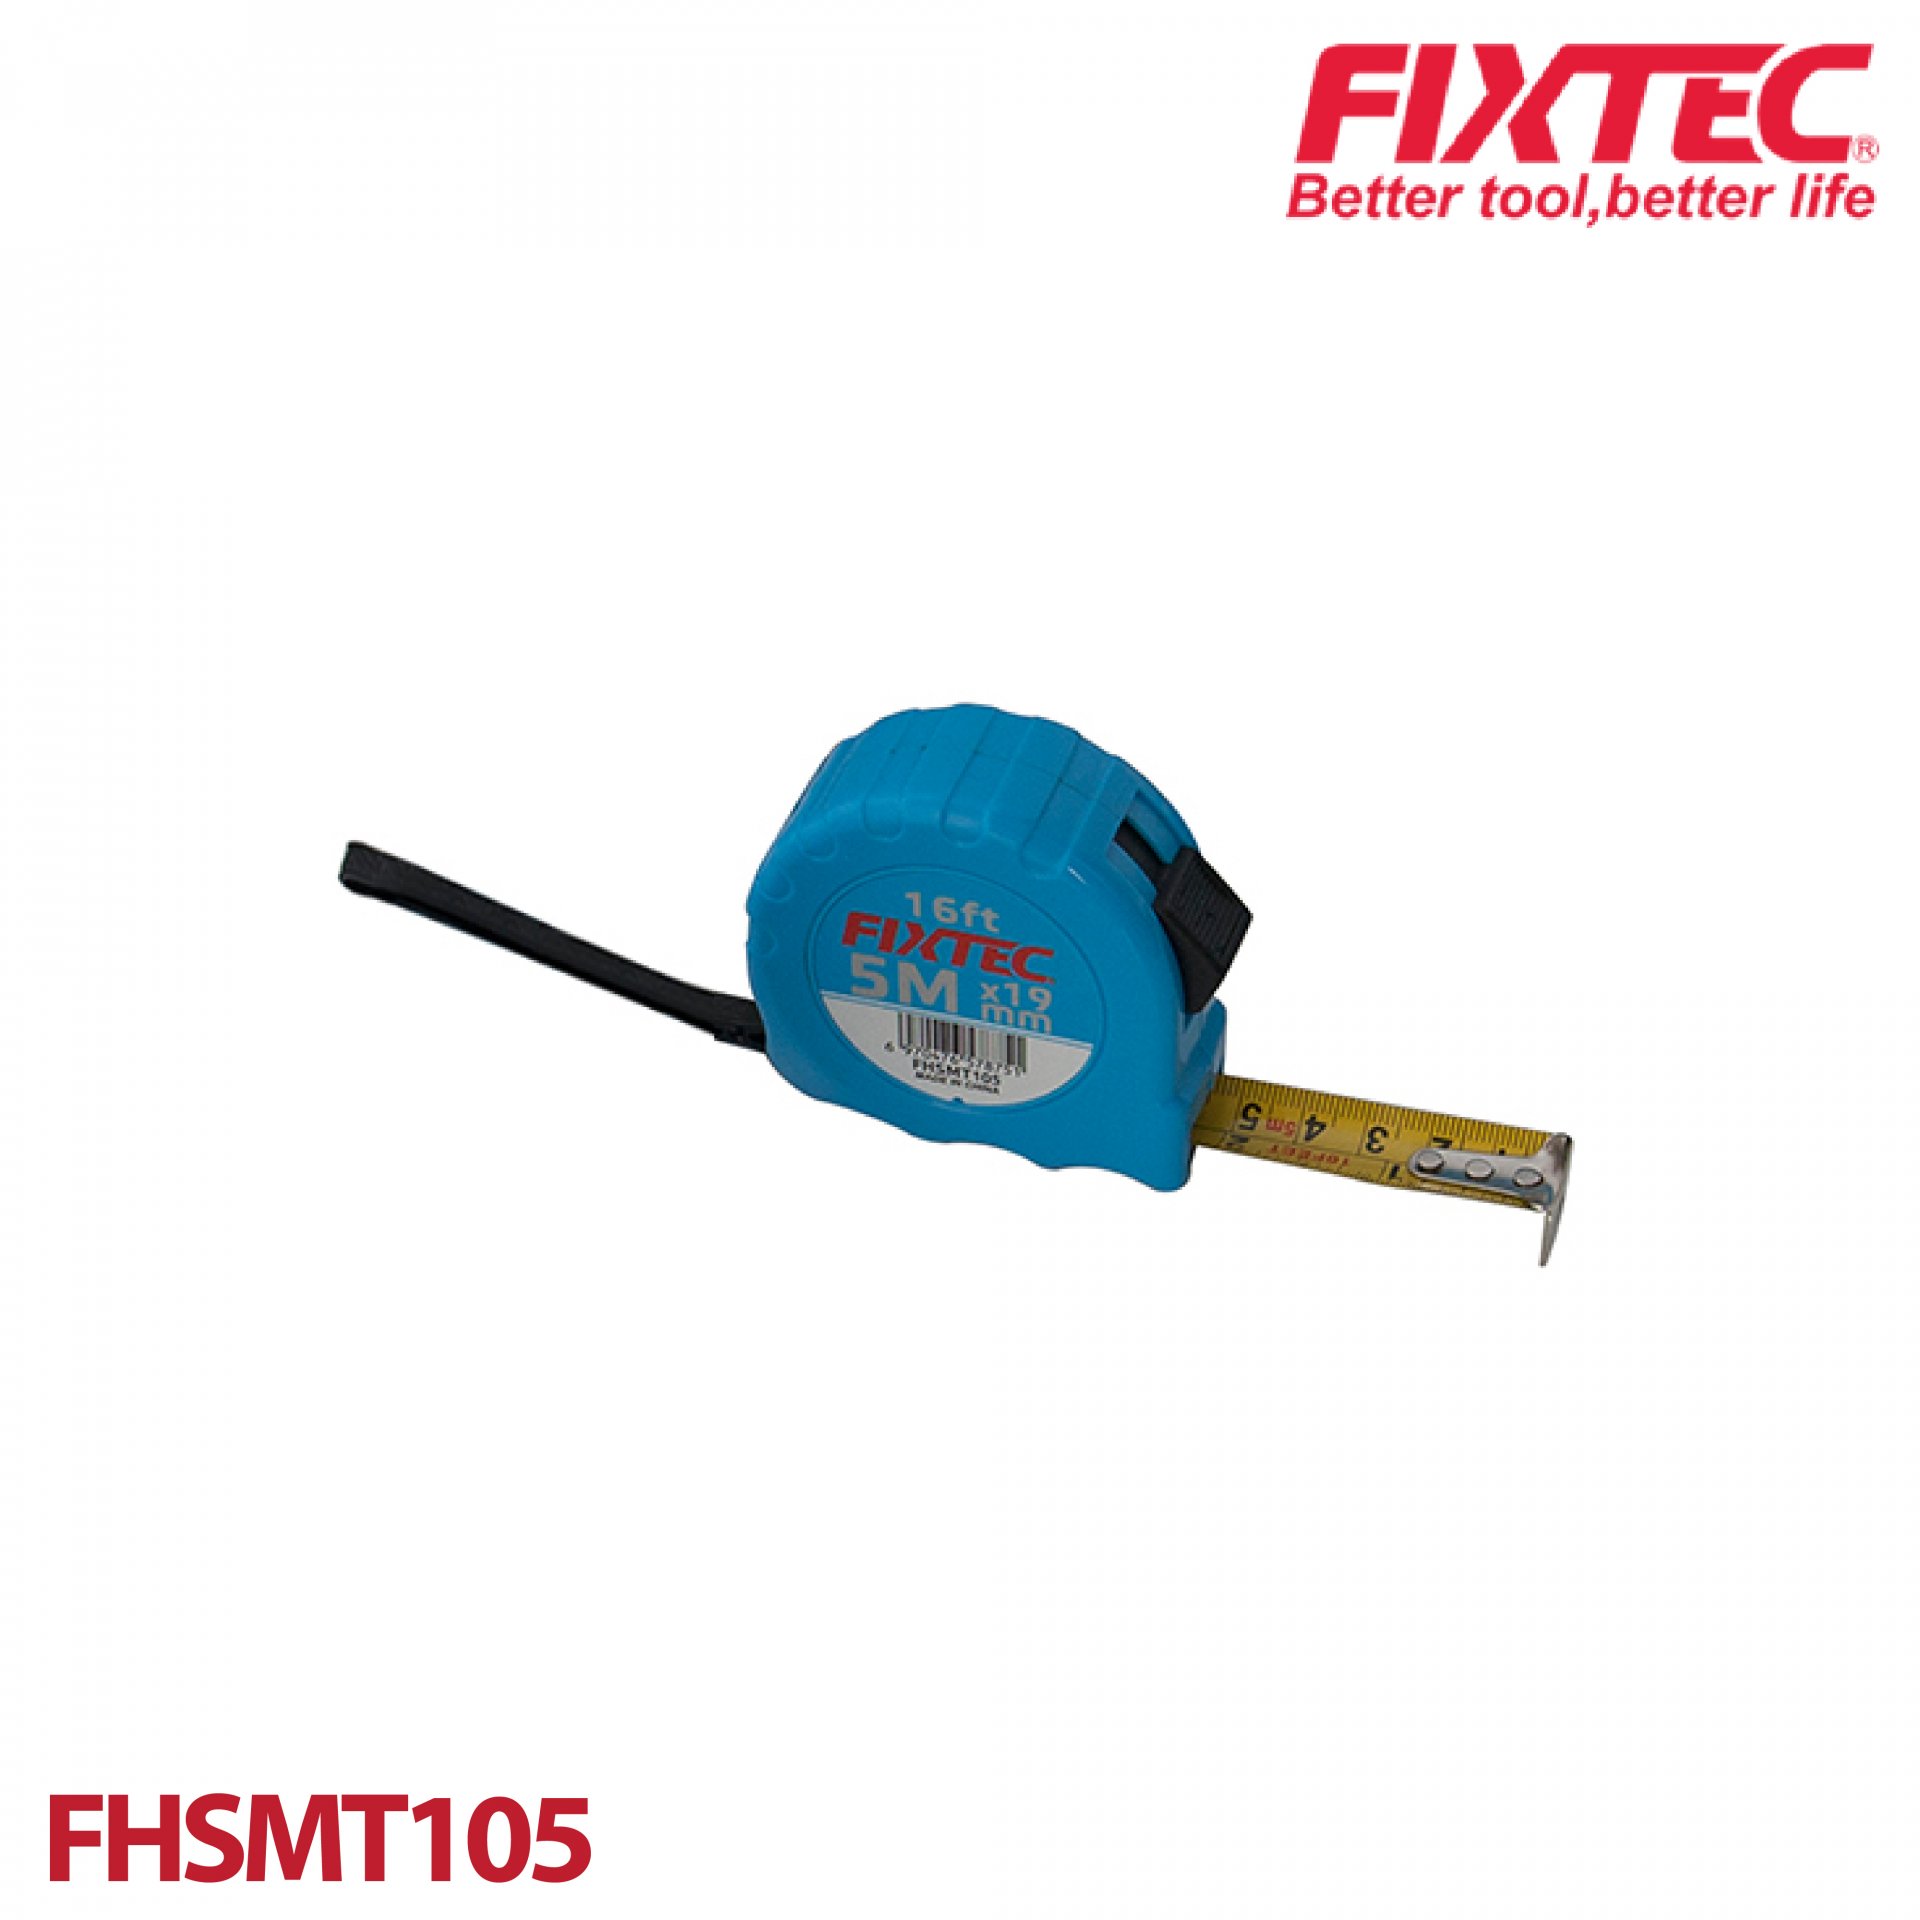 ตลับเมตร 5mx19mm FIXTEC FHSMT105